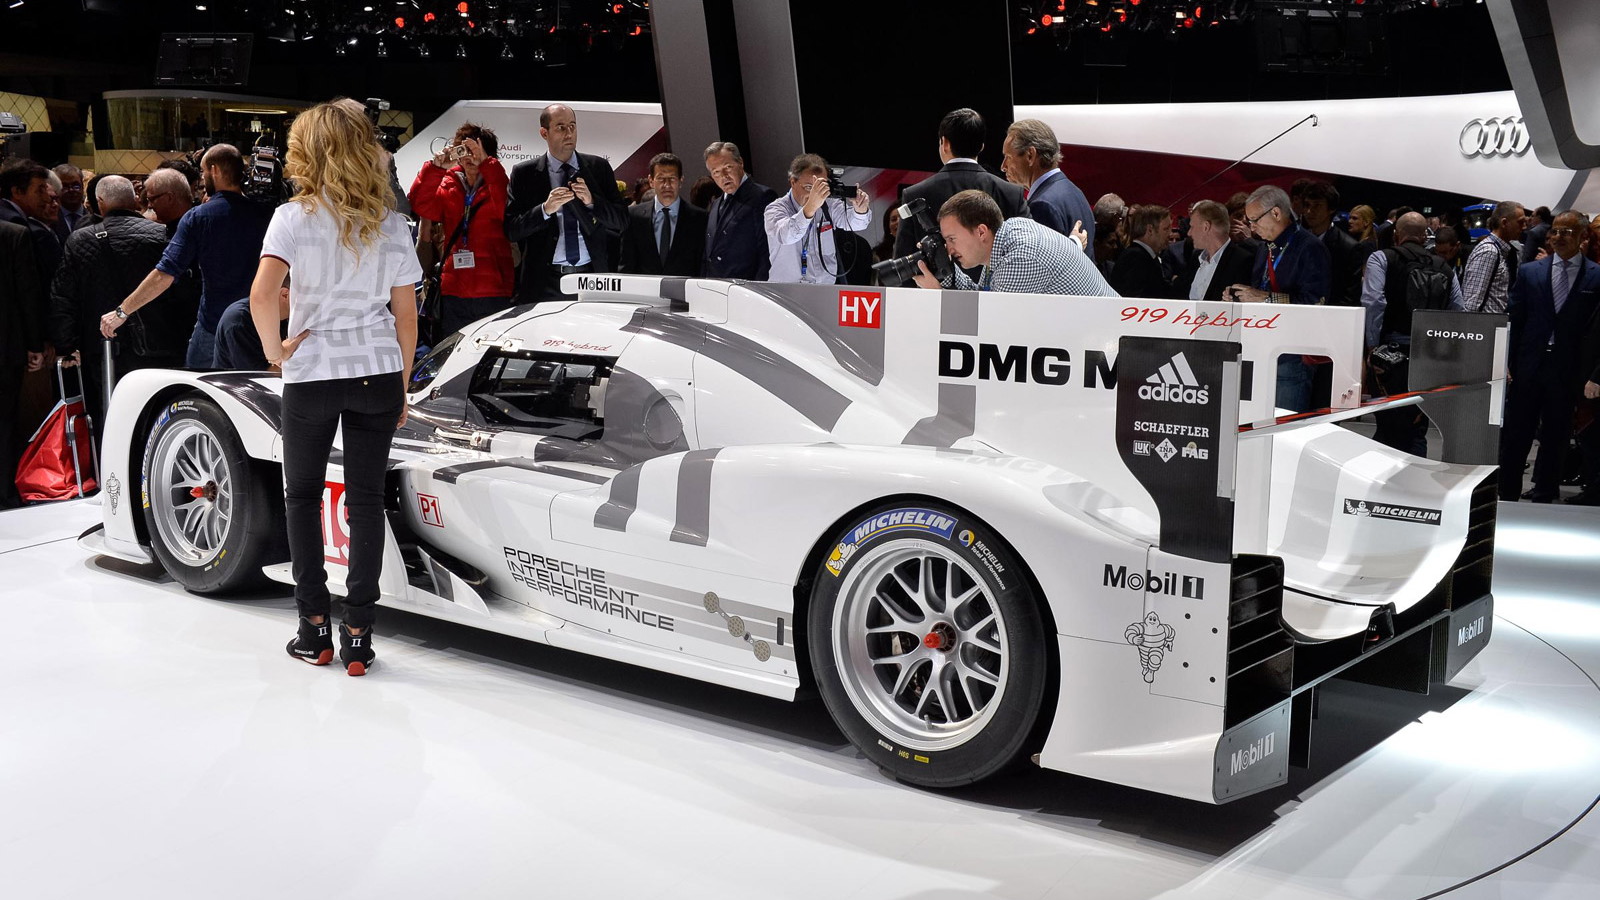 2014 Porsche 919 hybrid Le Mans prototype